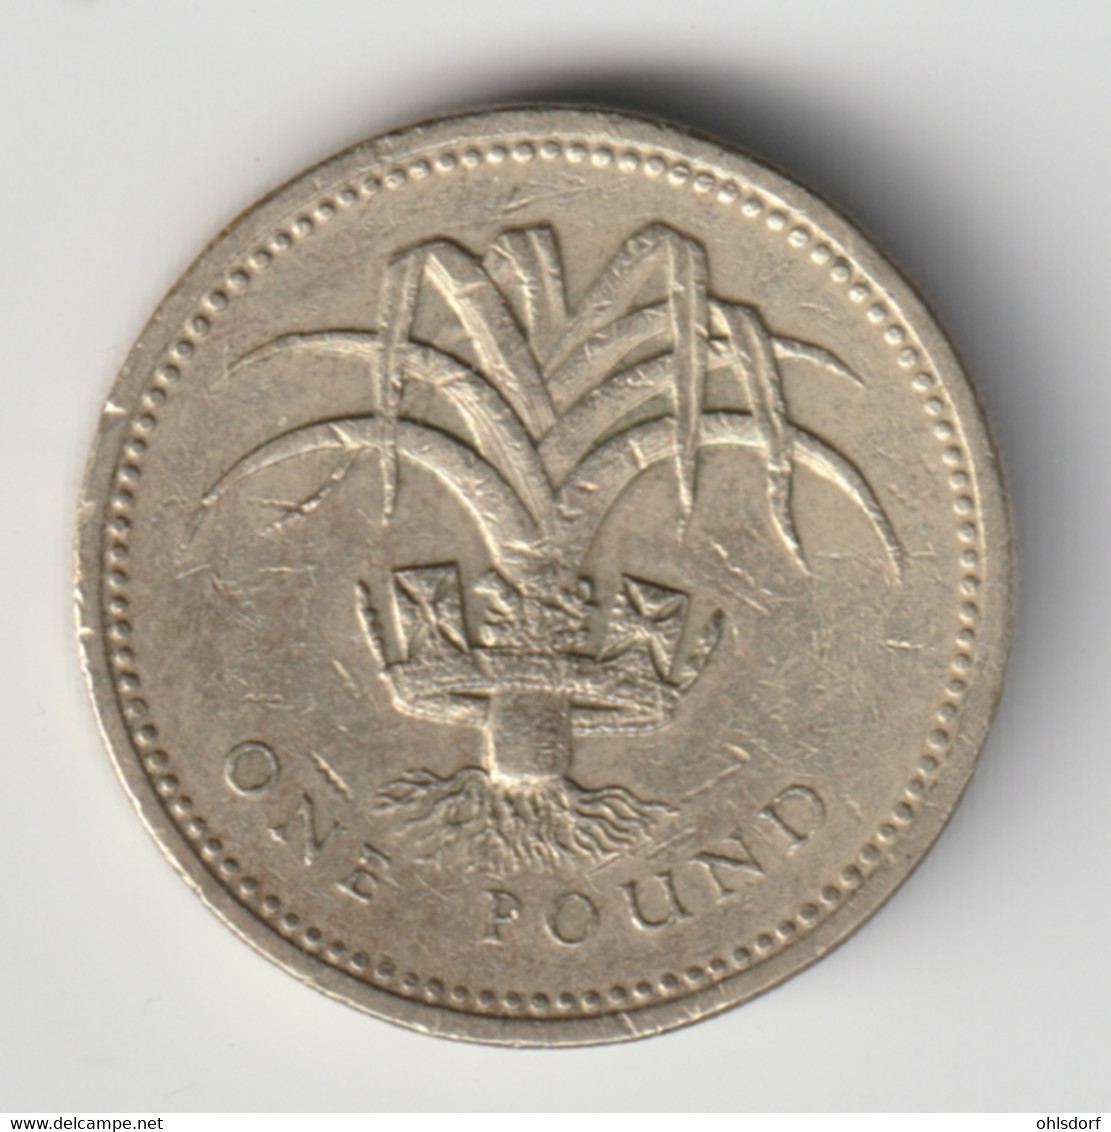 GREAT BRITAIN 1990: 1 Pound, KM 941 - 1 Pound